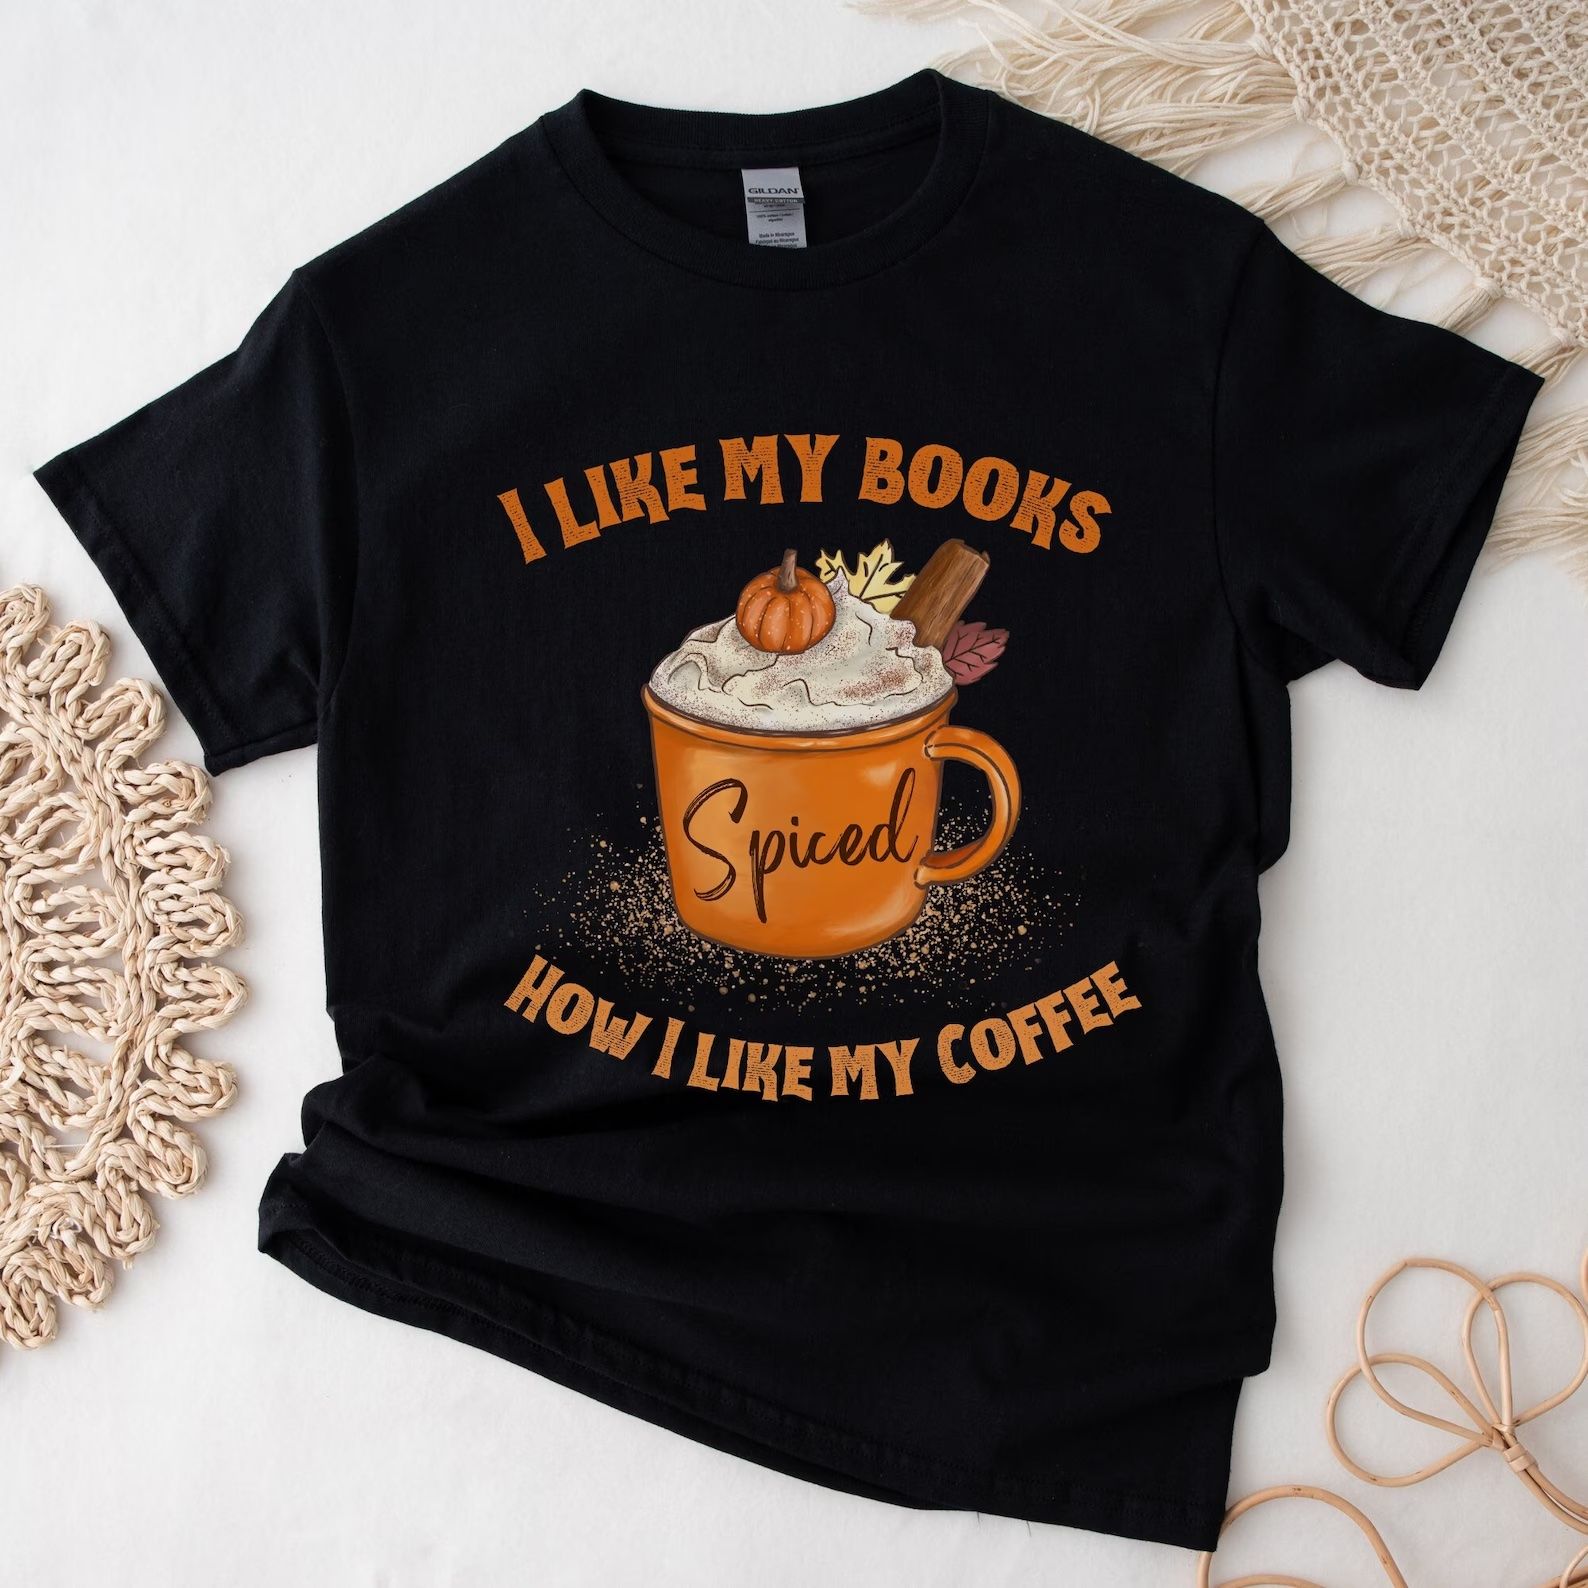 t shirt that says i like my books how i like my coffee, spiced